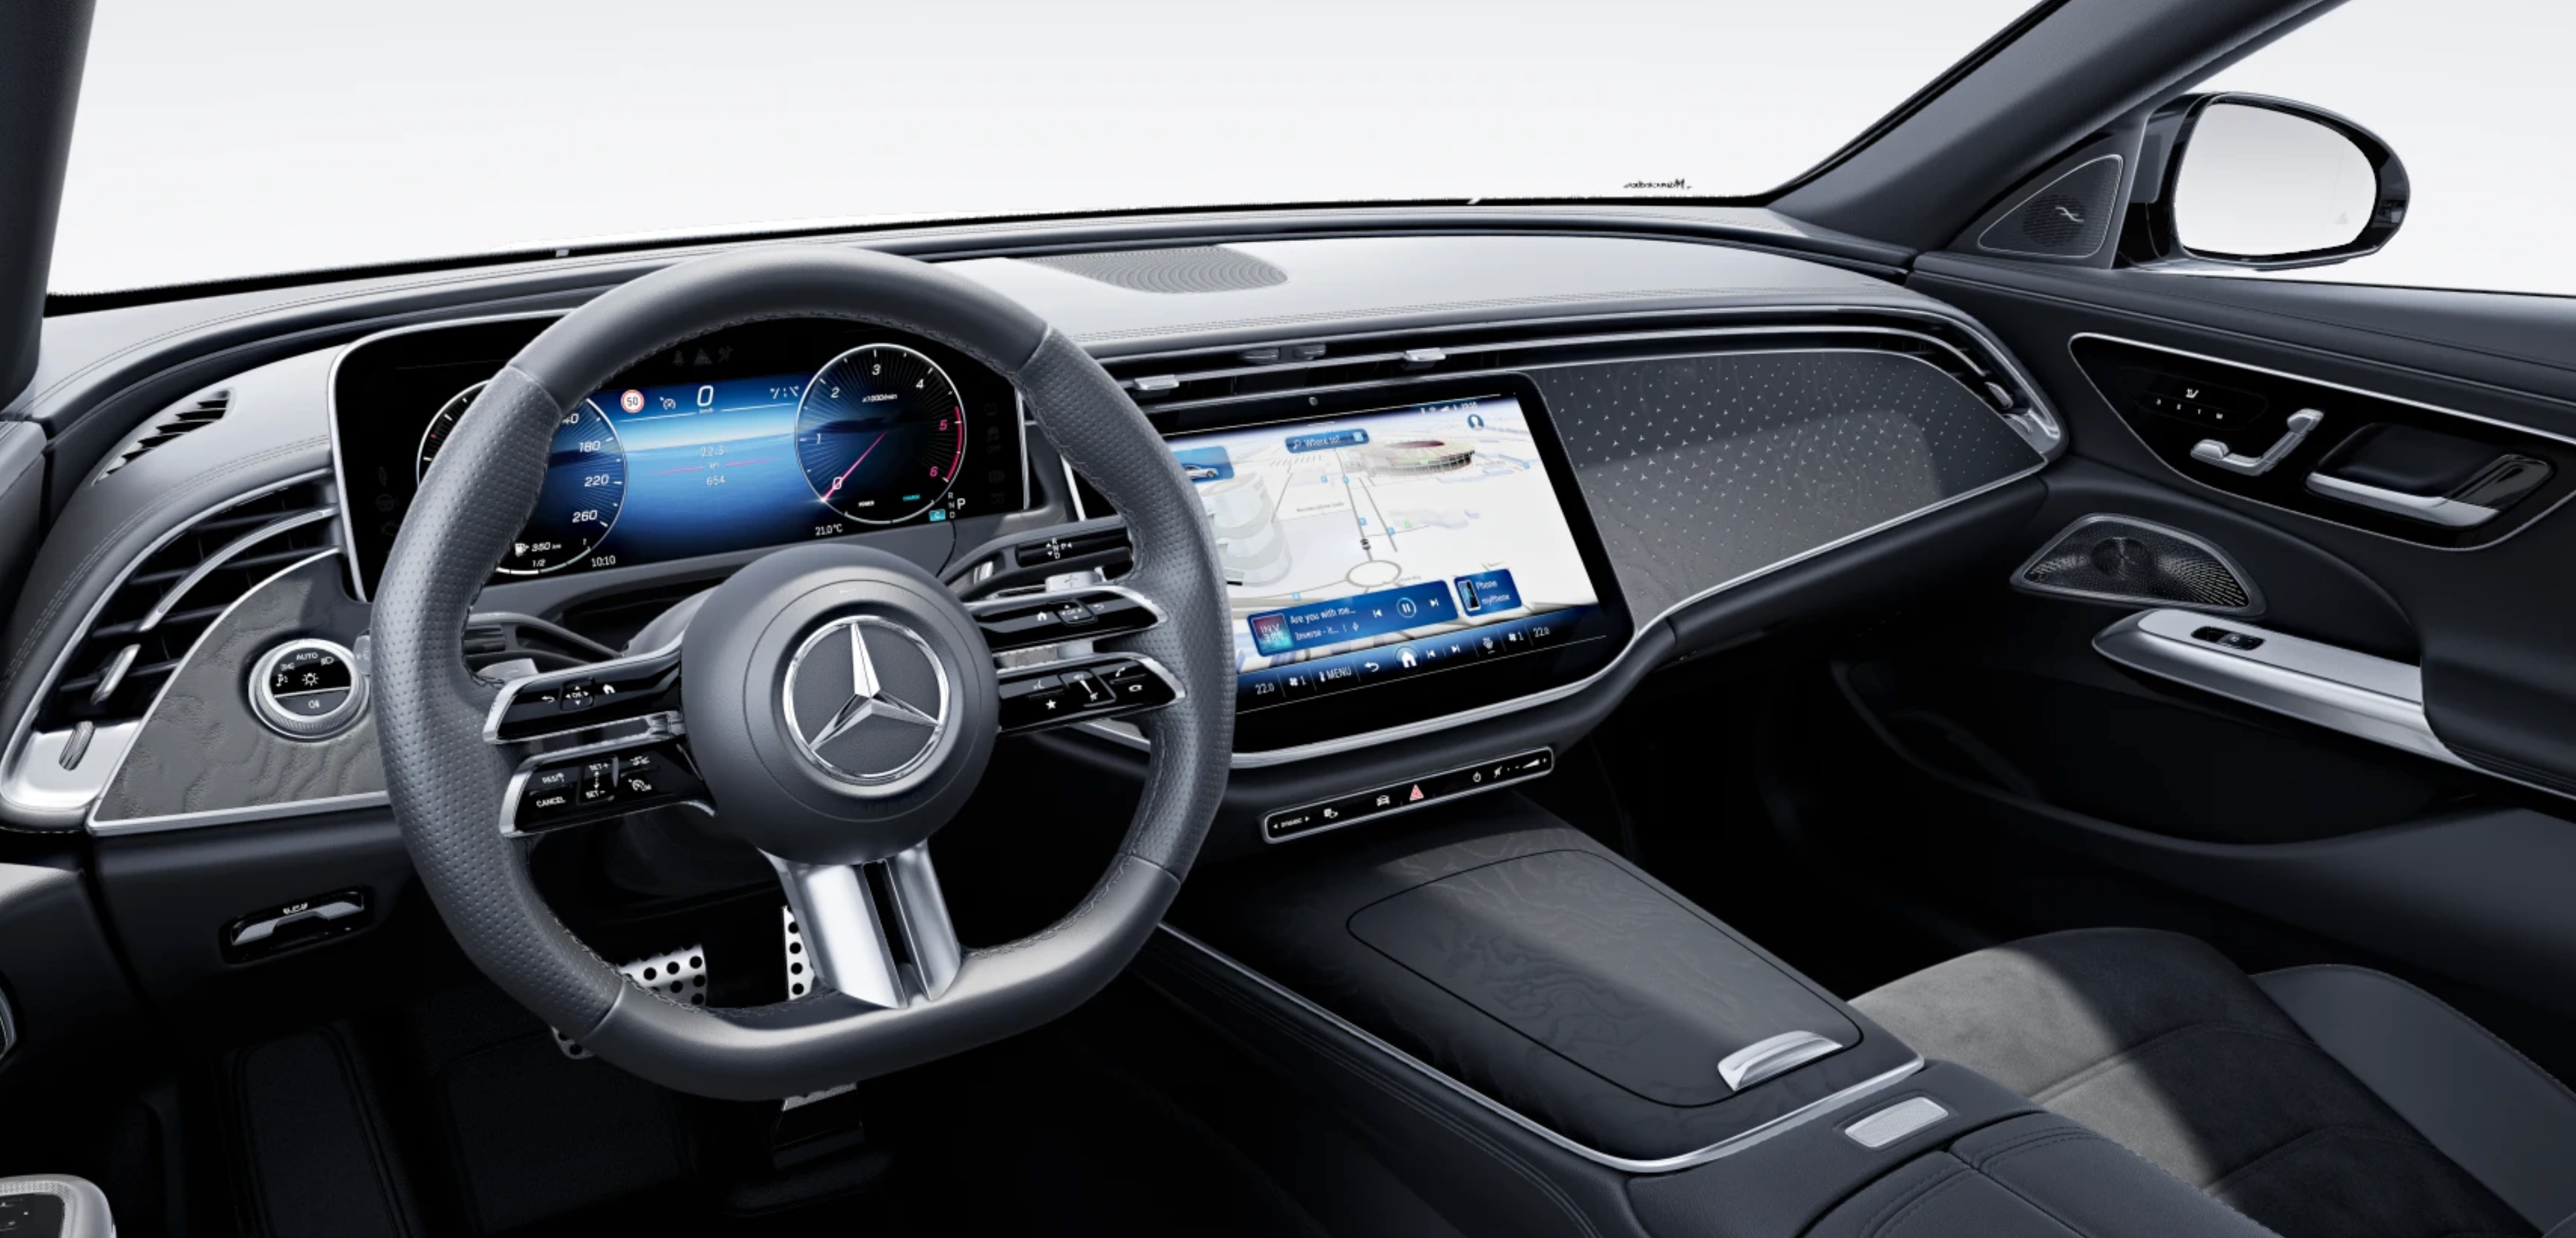 Mercedes E sedan 220d 4matic 9G-tronic AMG | nový model | byznys naftový sedan | nové auto ve výrobě | luxusní digitální interiér | nejmodernější technologie | nové auto ve výrobě | nákup online | AUTOiBUY.COM